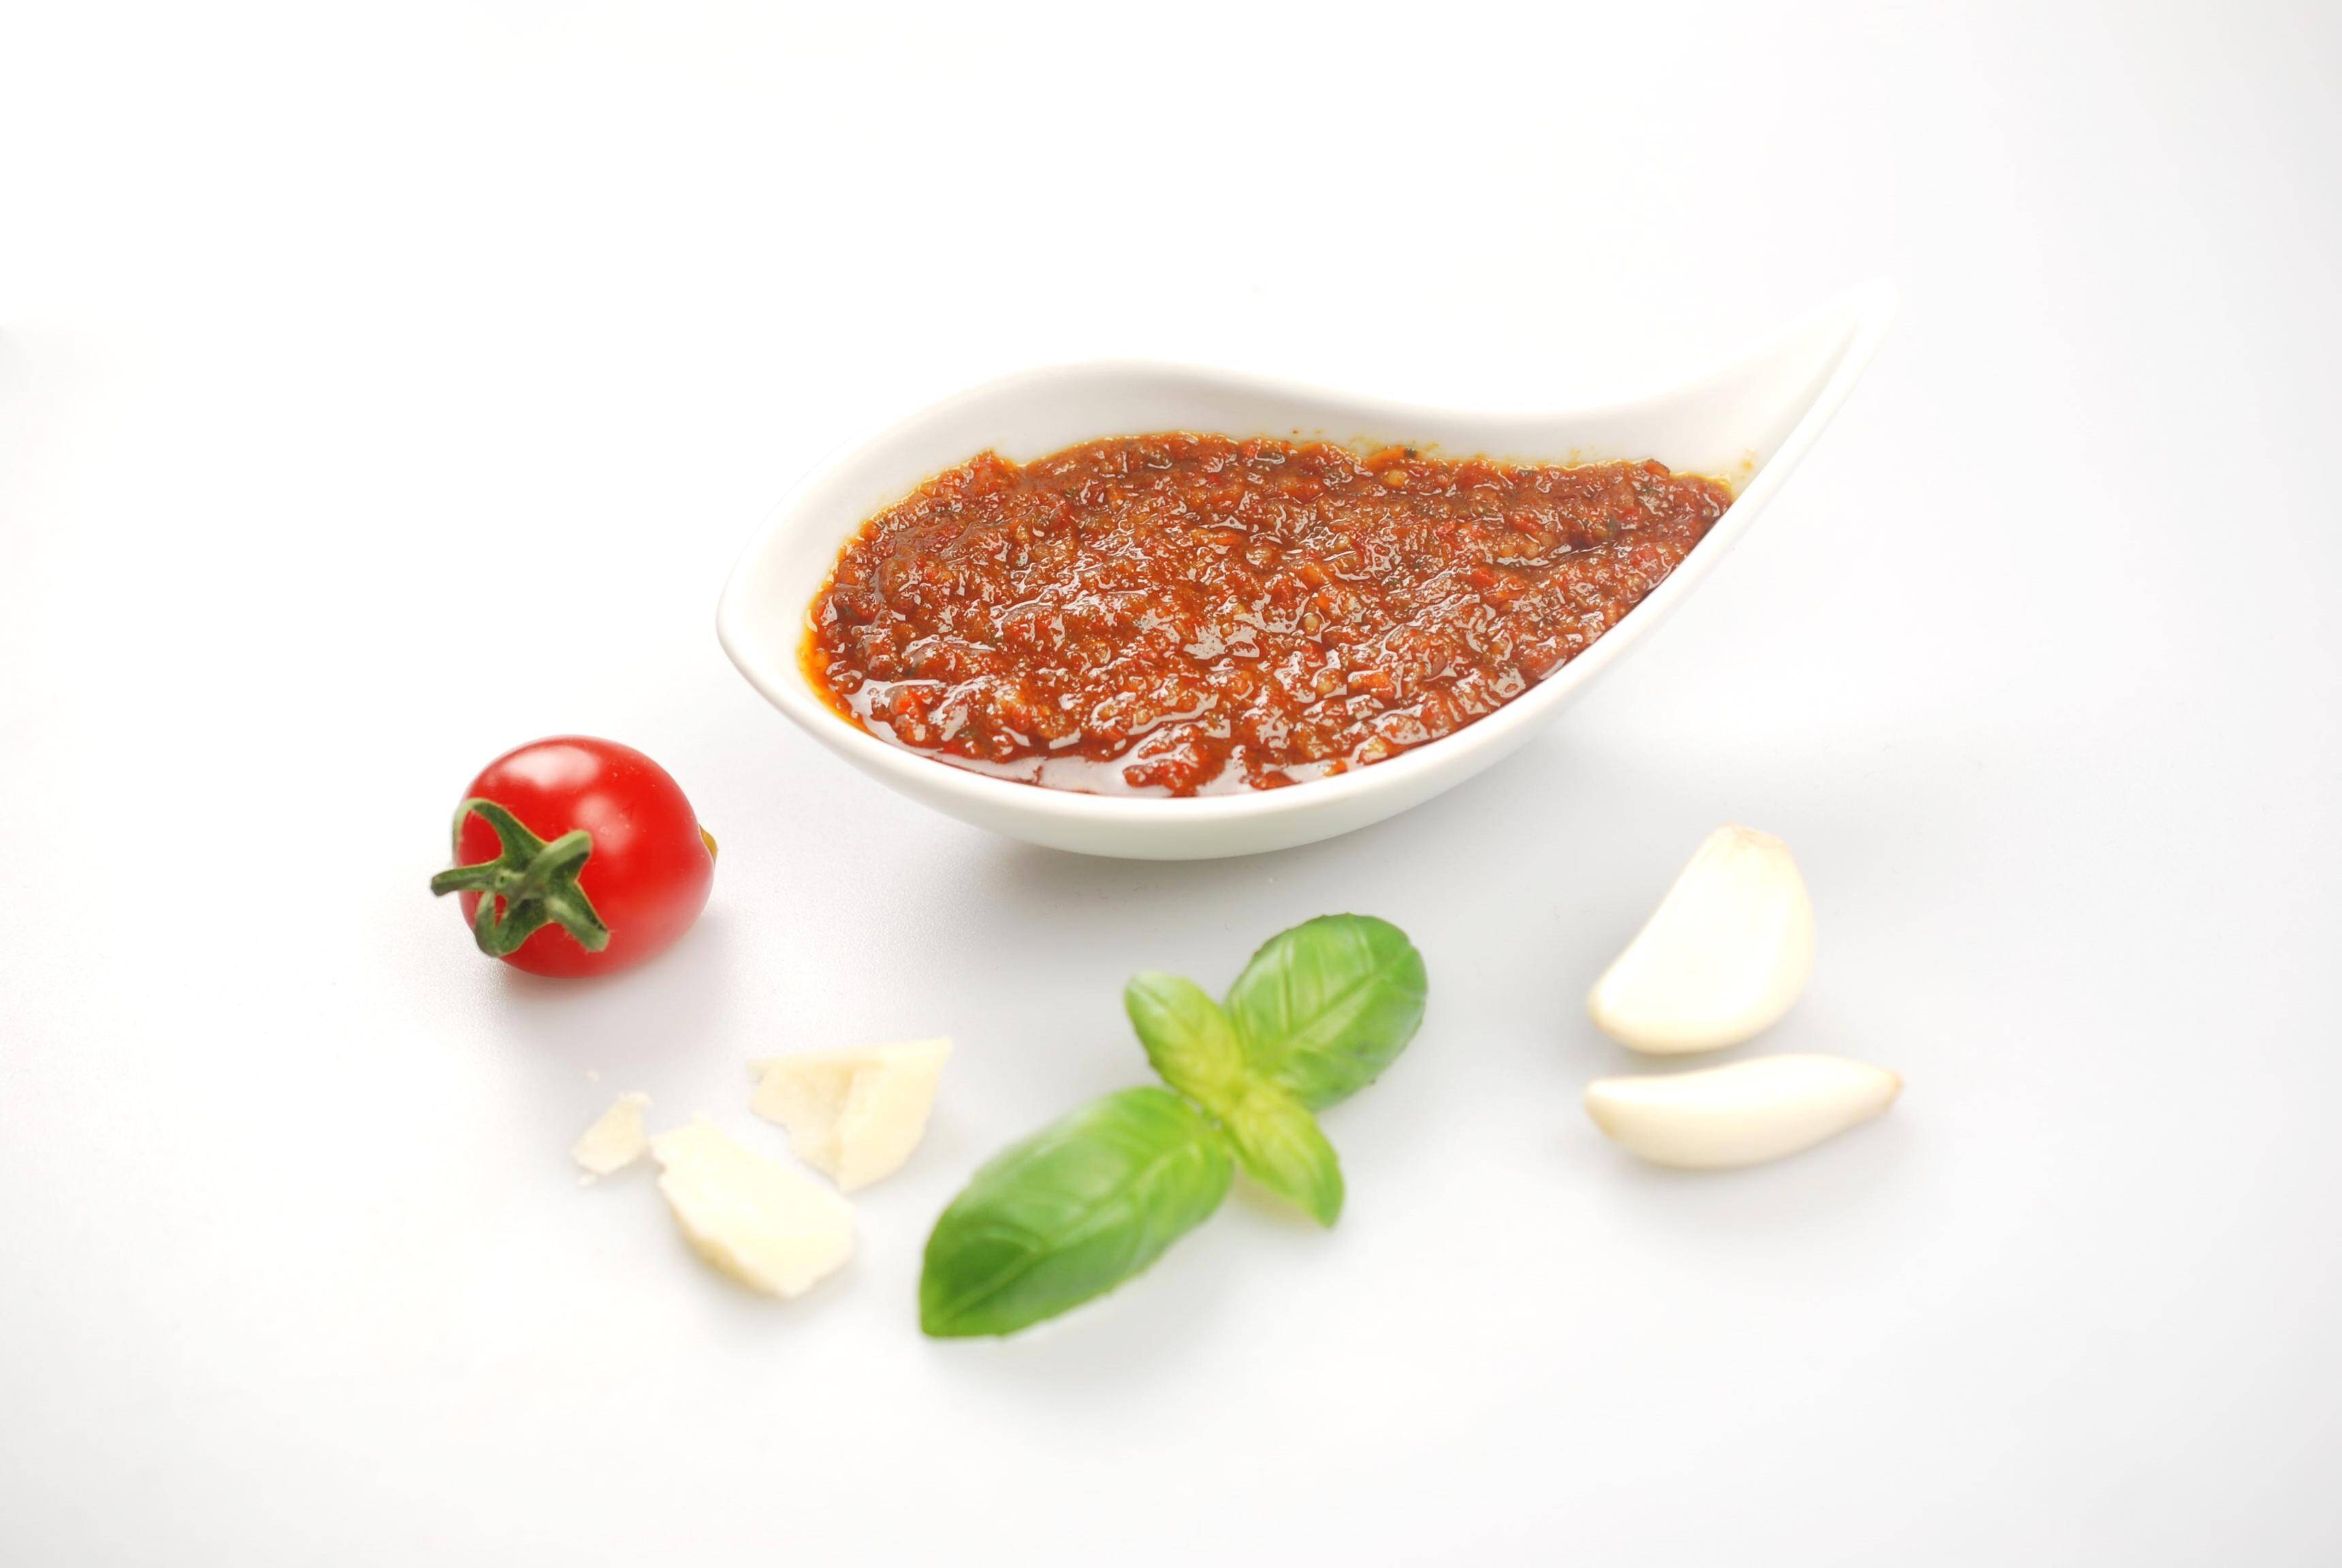 Pesto rosso alla siciliana 0,5 kg/4  mroż.Perino